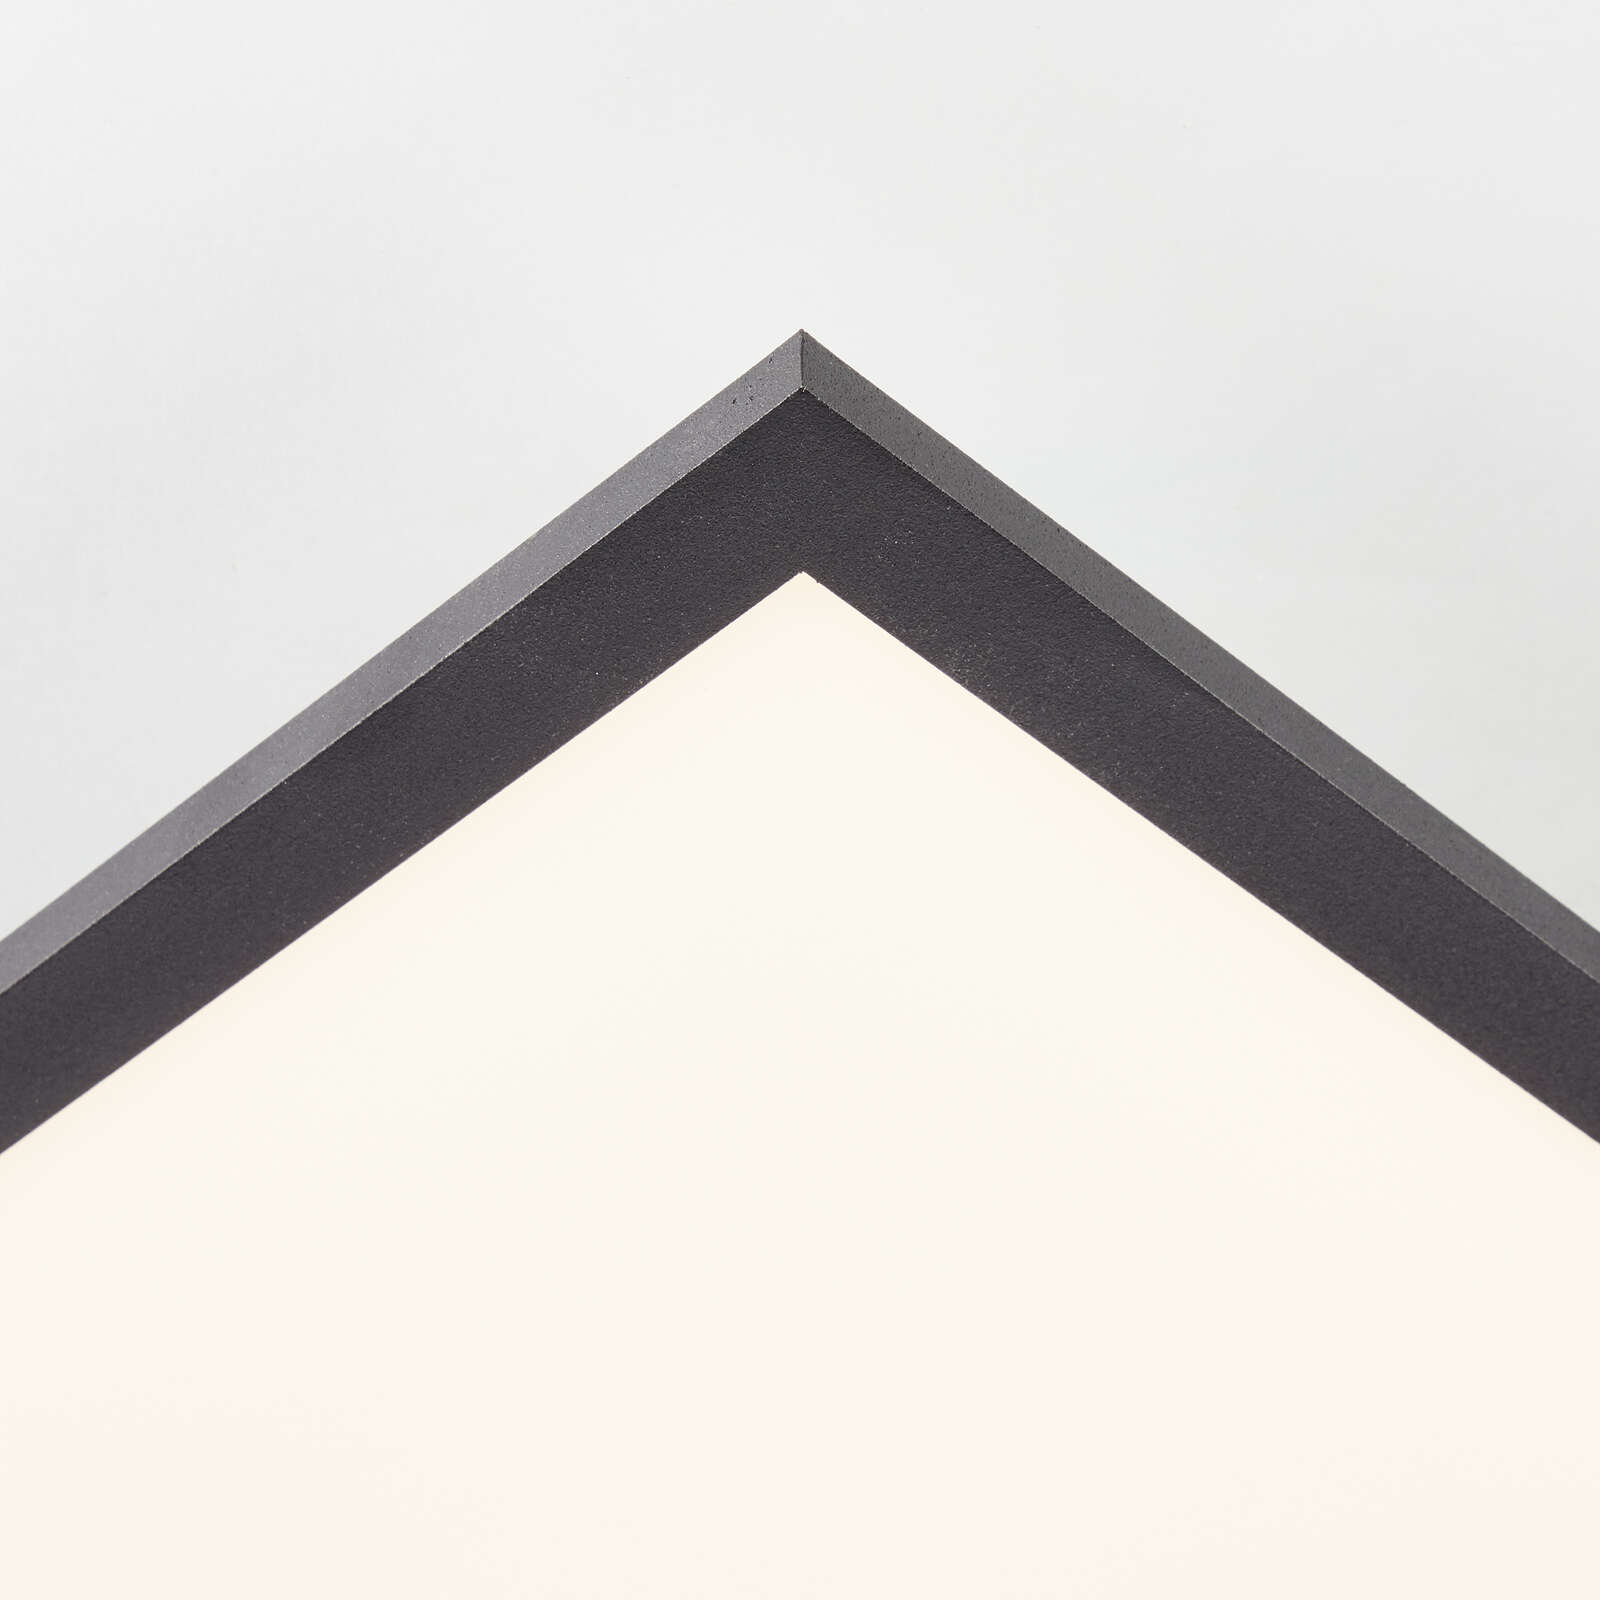             Plastic ceiling light - Jolien 3 - Black
        